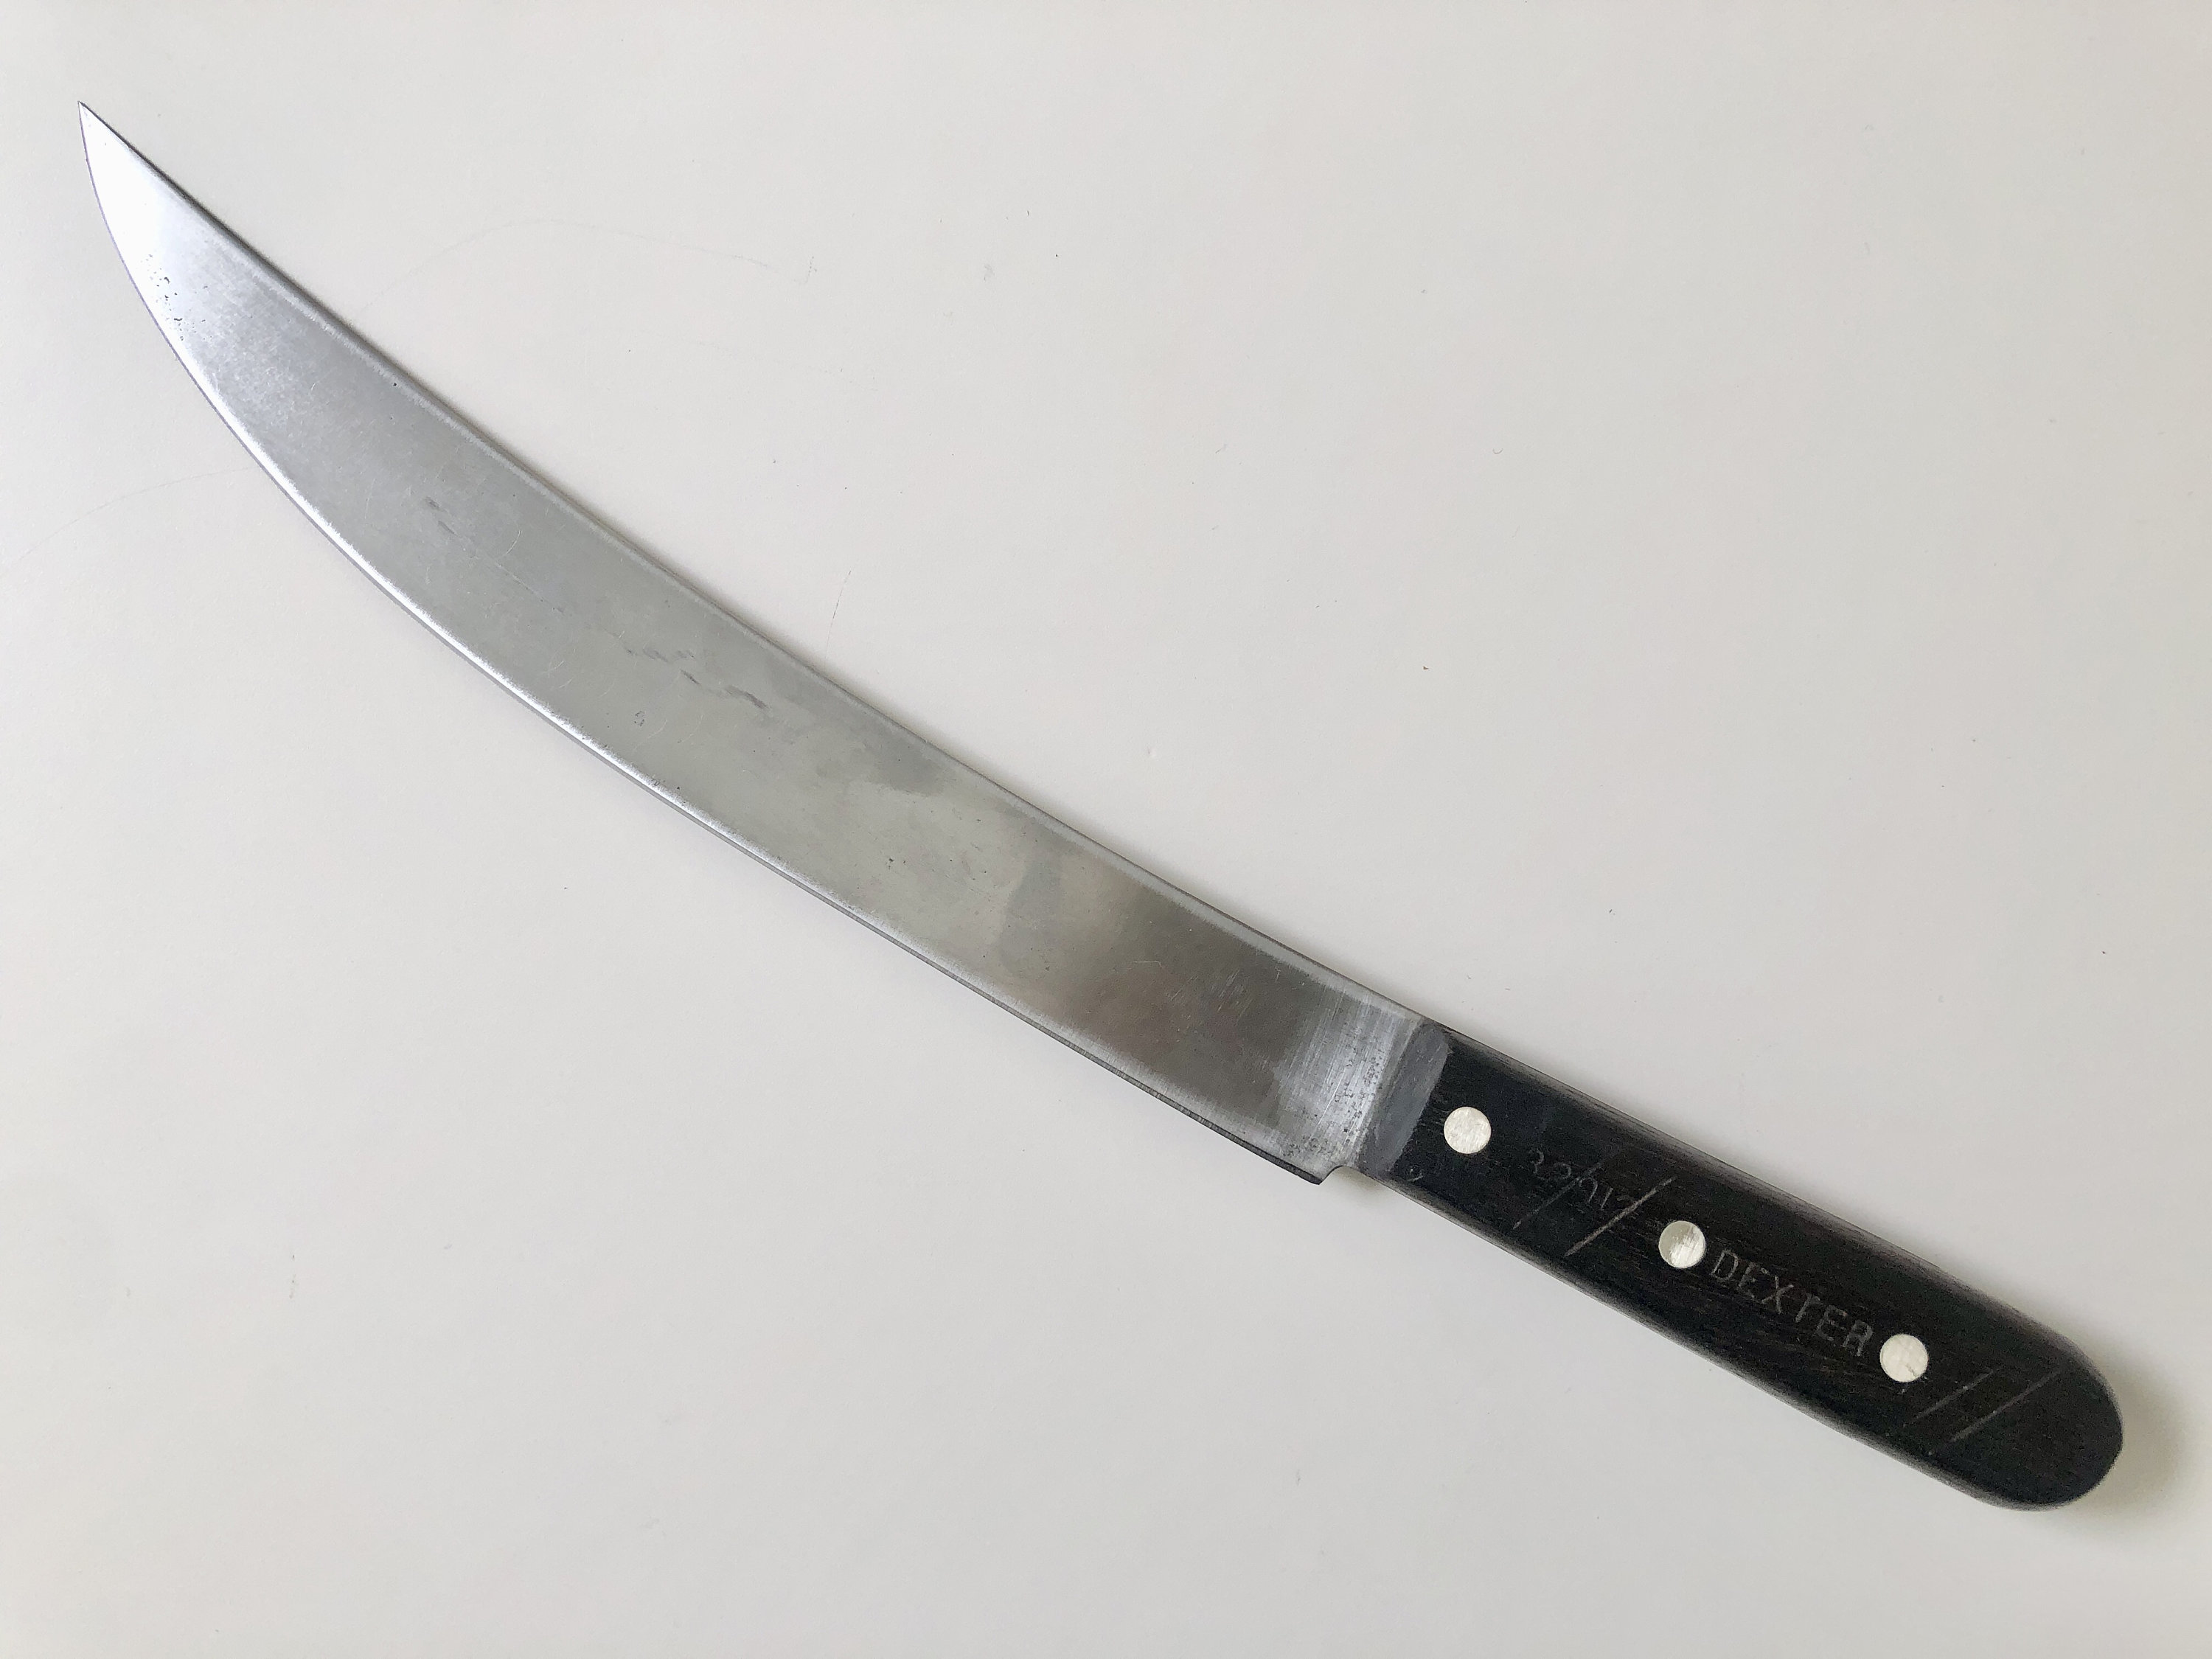 Dexter Black Plastic Magnetic Knife Holder - 13L